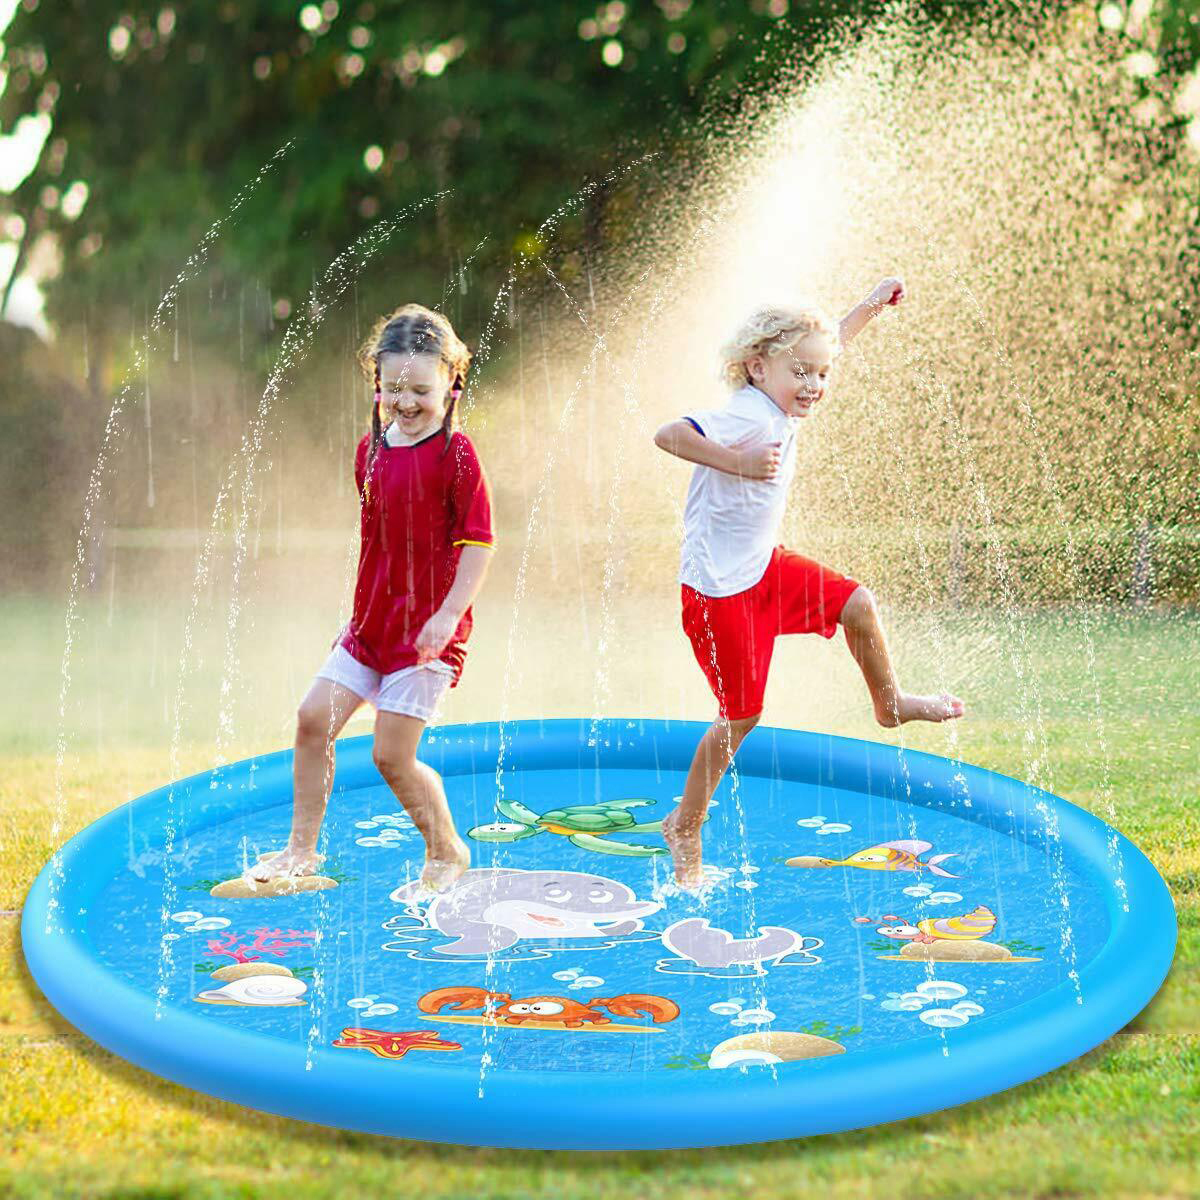 Splash Pad Wasserspielmatte Sprinkler Sprinklermatte Spritzmatte 170CM 